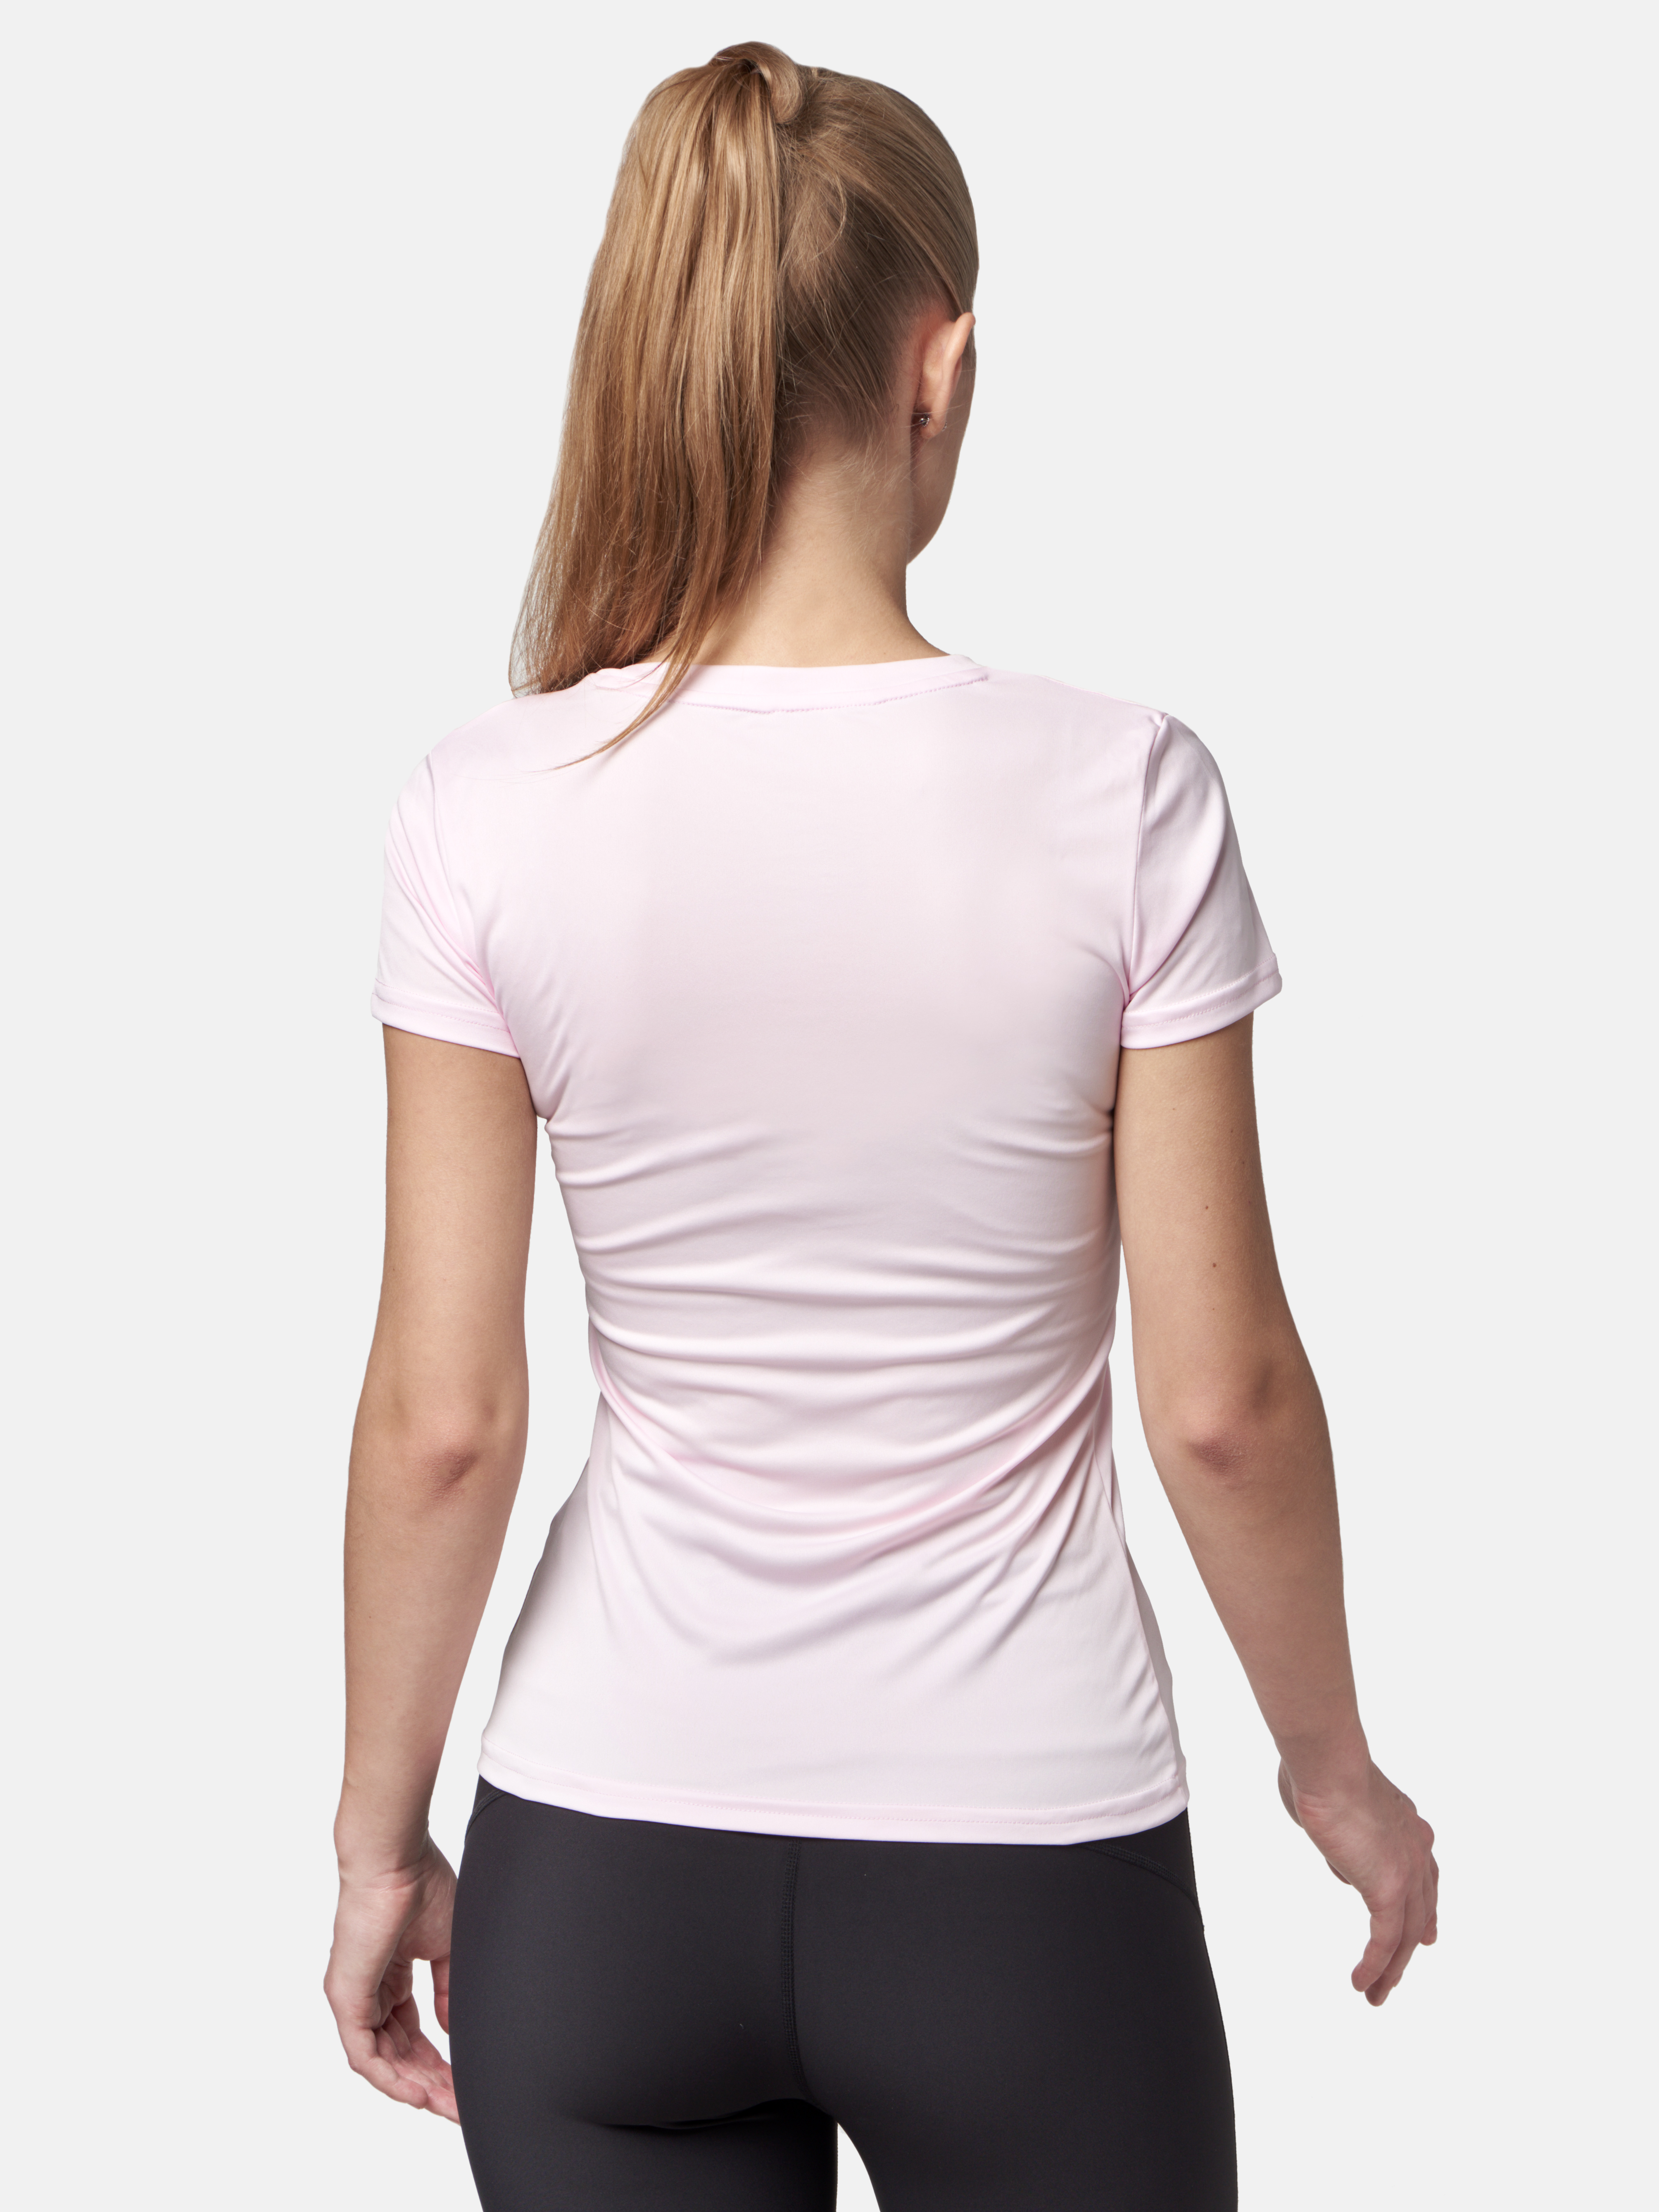 Peresvit Womens Core Training T-shirt Pale Pink, Photo No. 2